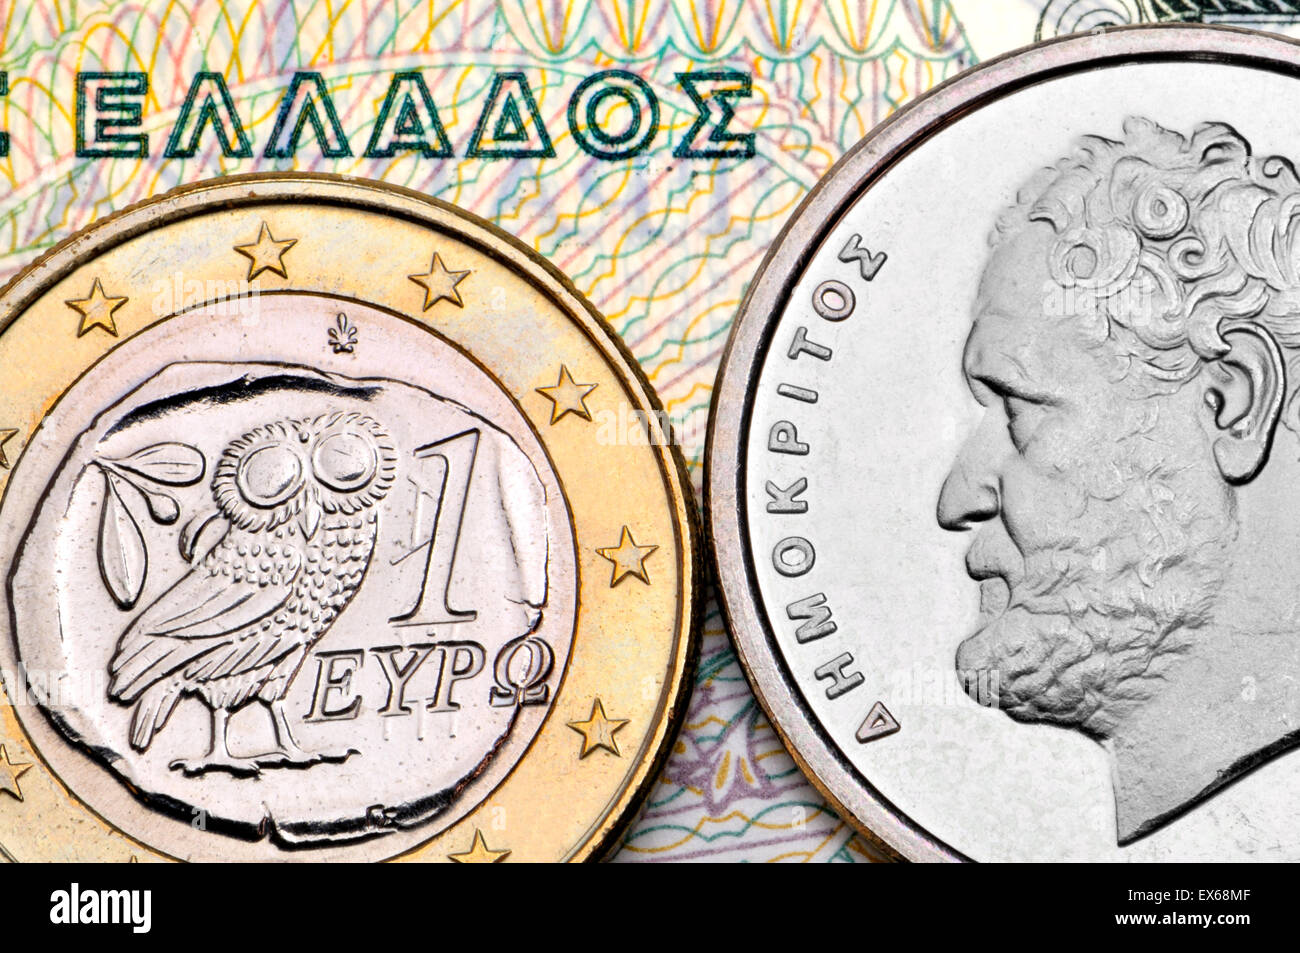 Monnaie grecque - drachmes et Euro - Democrates sur une pièce de 10dr Banque D'Images